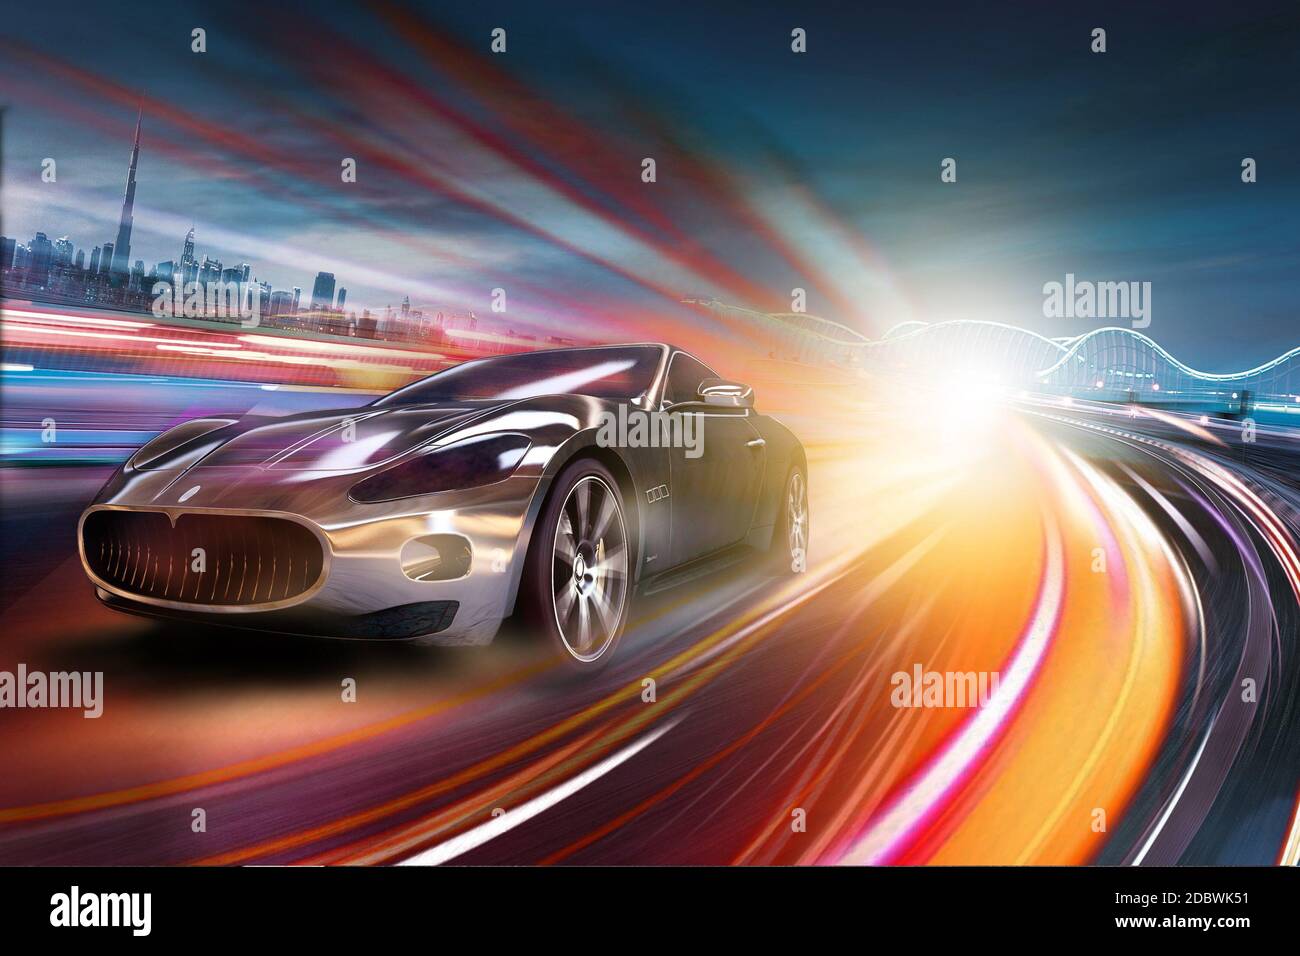 Sports Cars: Cảm nhận sự tốc độ và khí động học của những chiếc xe thể thao trong bức ảnh. Được dẫn đầu bởi các thương hiệu Ý nổi tiếng, đây là niềm đam mê của những người yêu xe trên toàn thế giới.